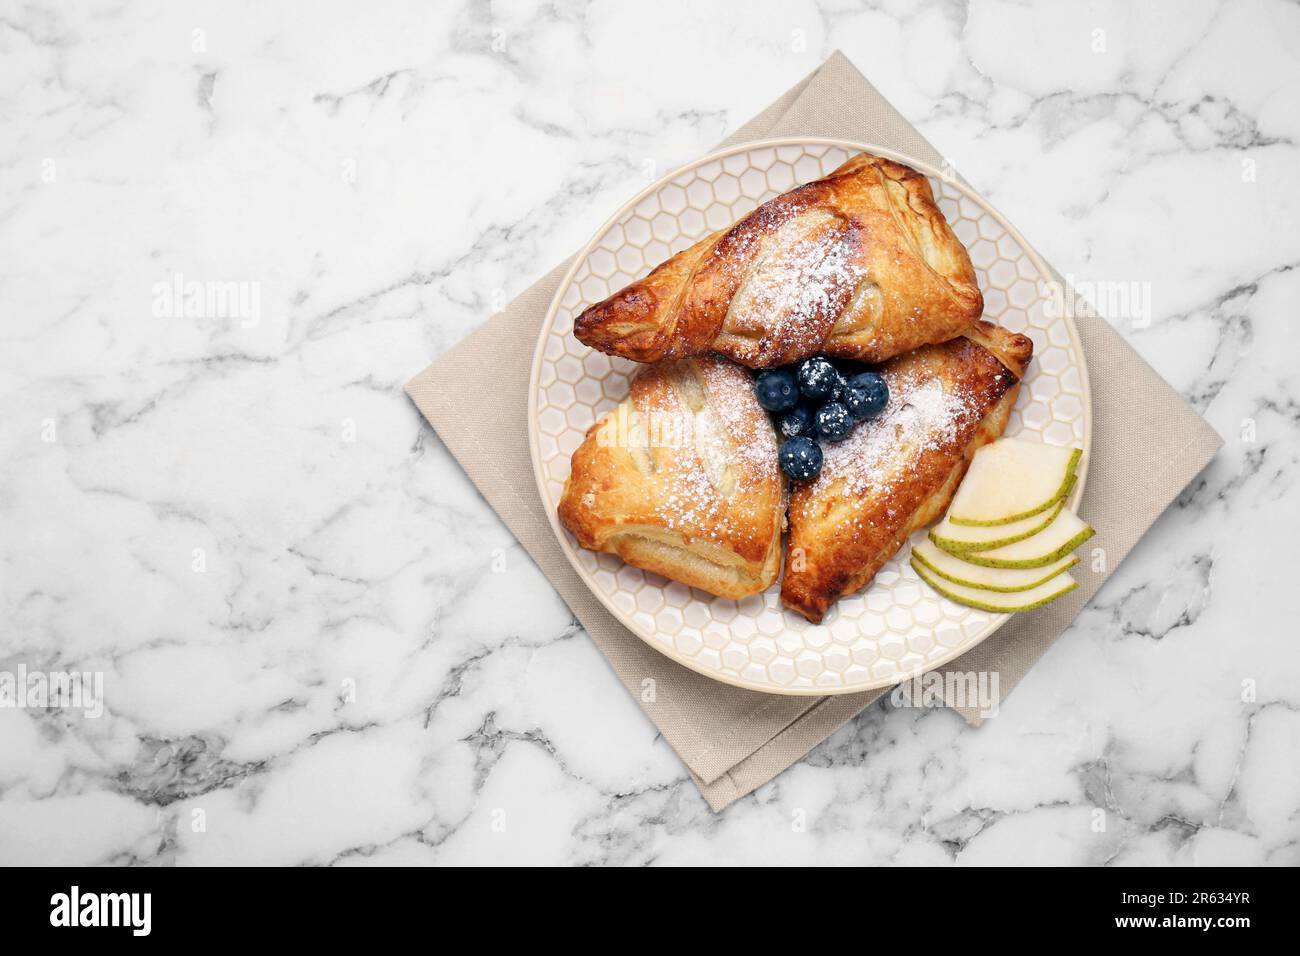 Savoureuse pâtisserie fraîche avec sucre en poudre, poire et bleuets servis sur une table en marbre blanc, vue du dessus. Espace pour le texte Banque D'Images